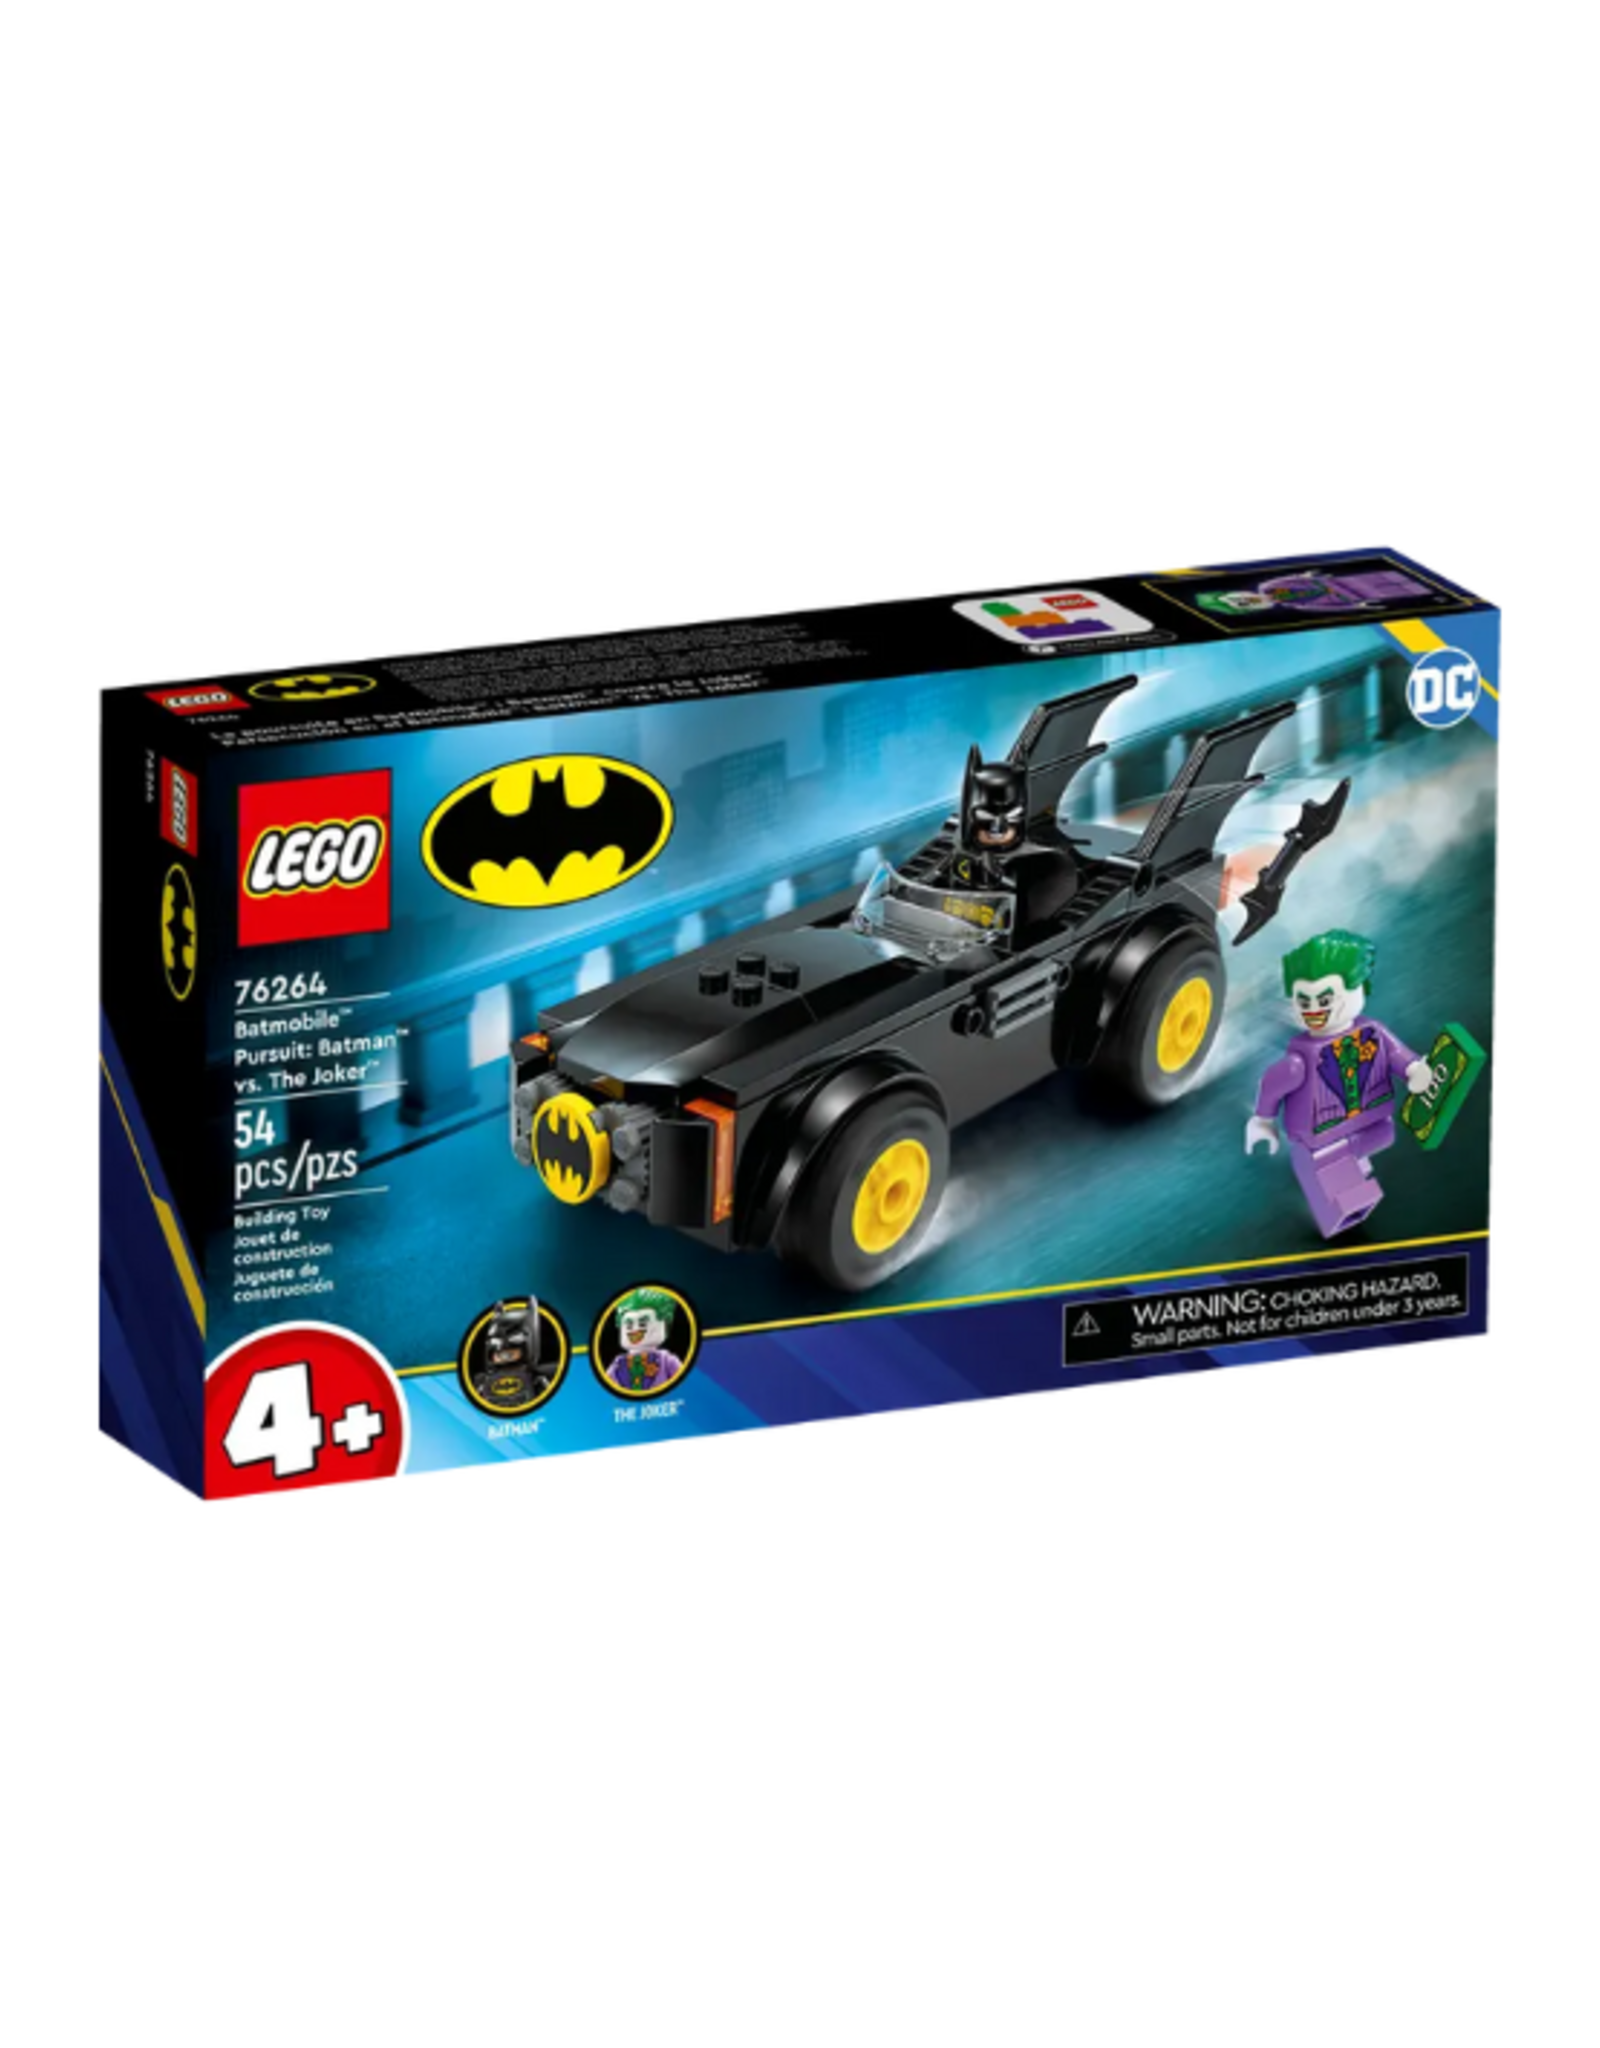 Lego - Batman - 76264 - Batmobile™ Pursuit: Batman™ vs. The Joker™ -   - Westmans Local Toy Store